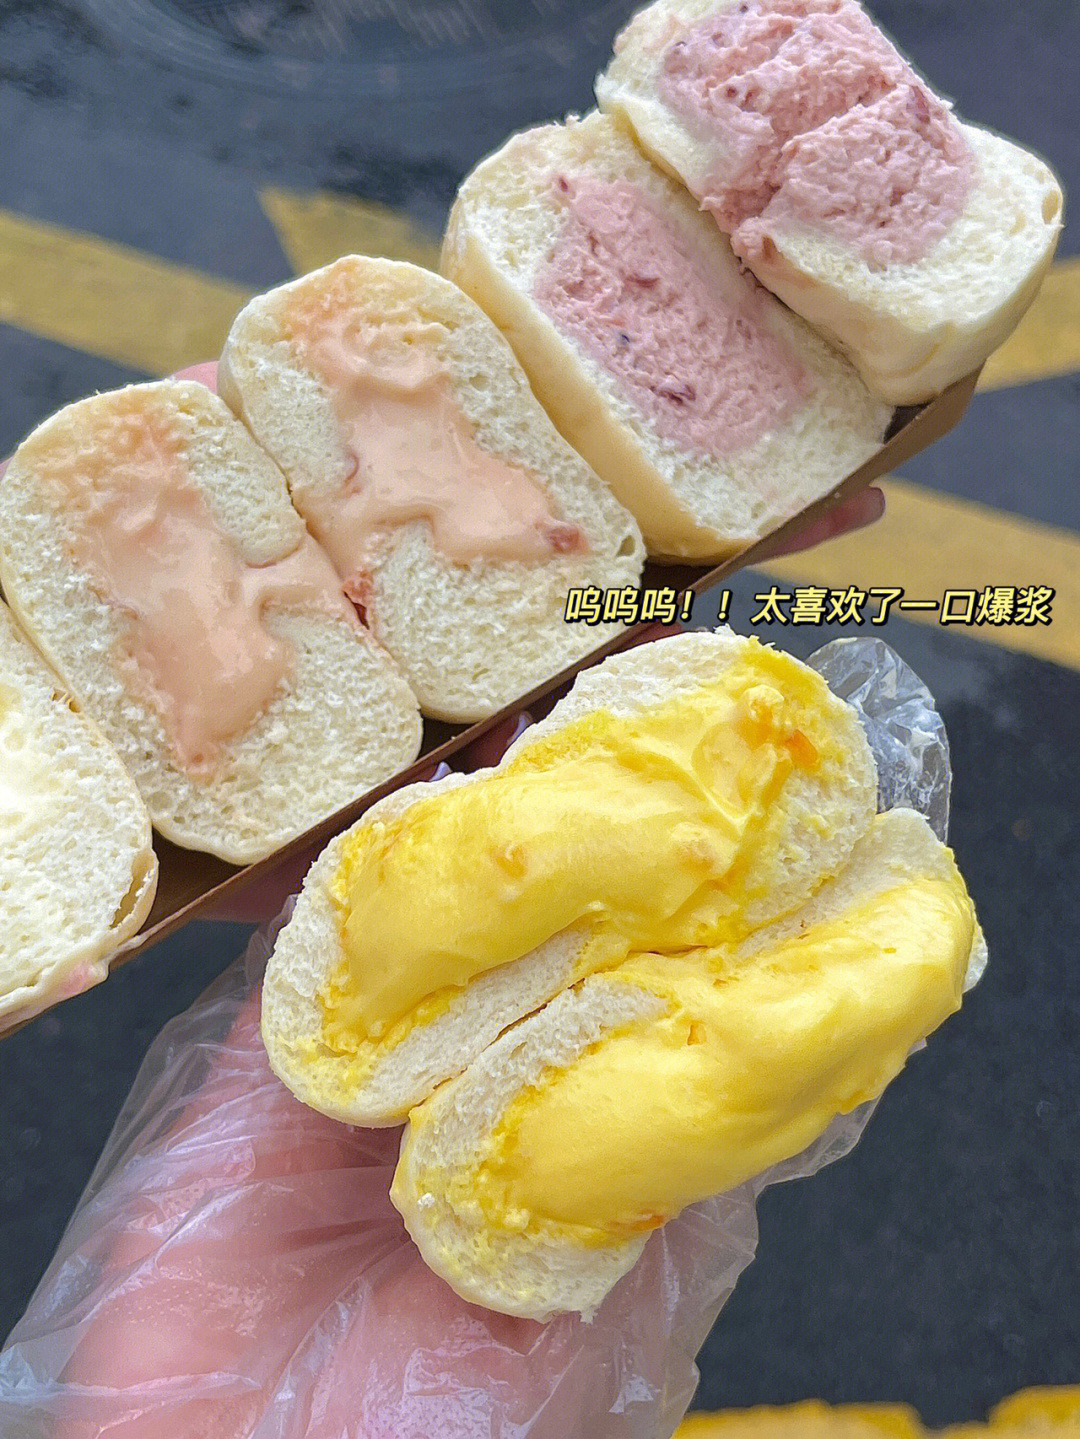 听说最近华丰贺氏出了新品冰面包95居然一个才59r!